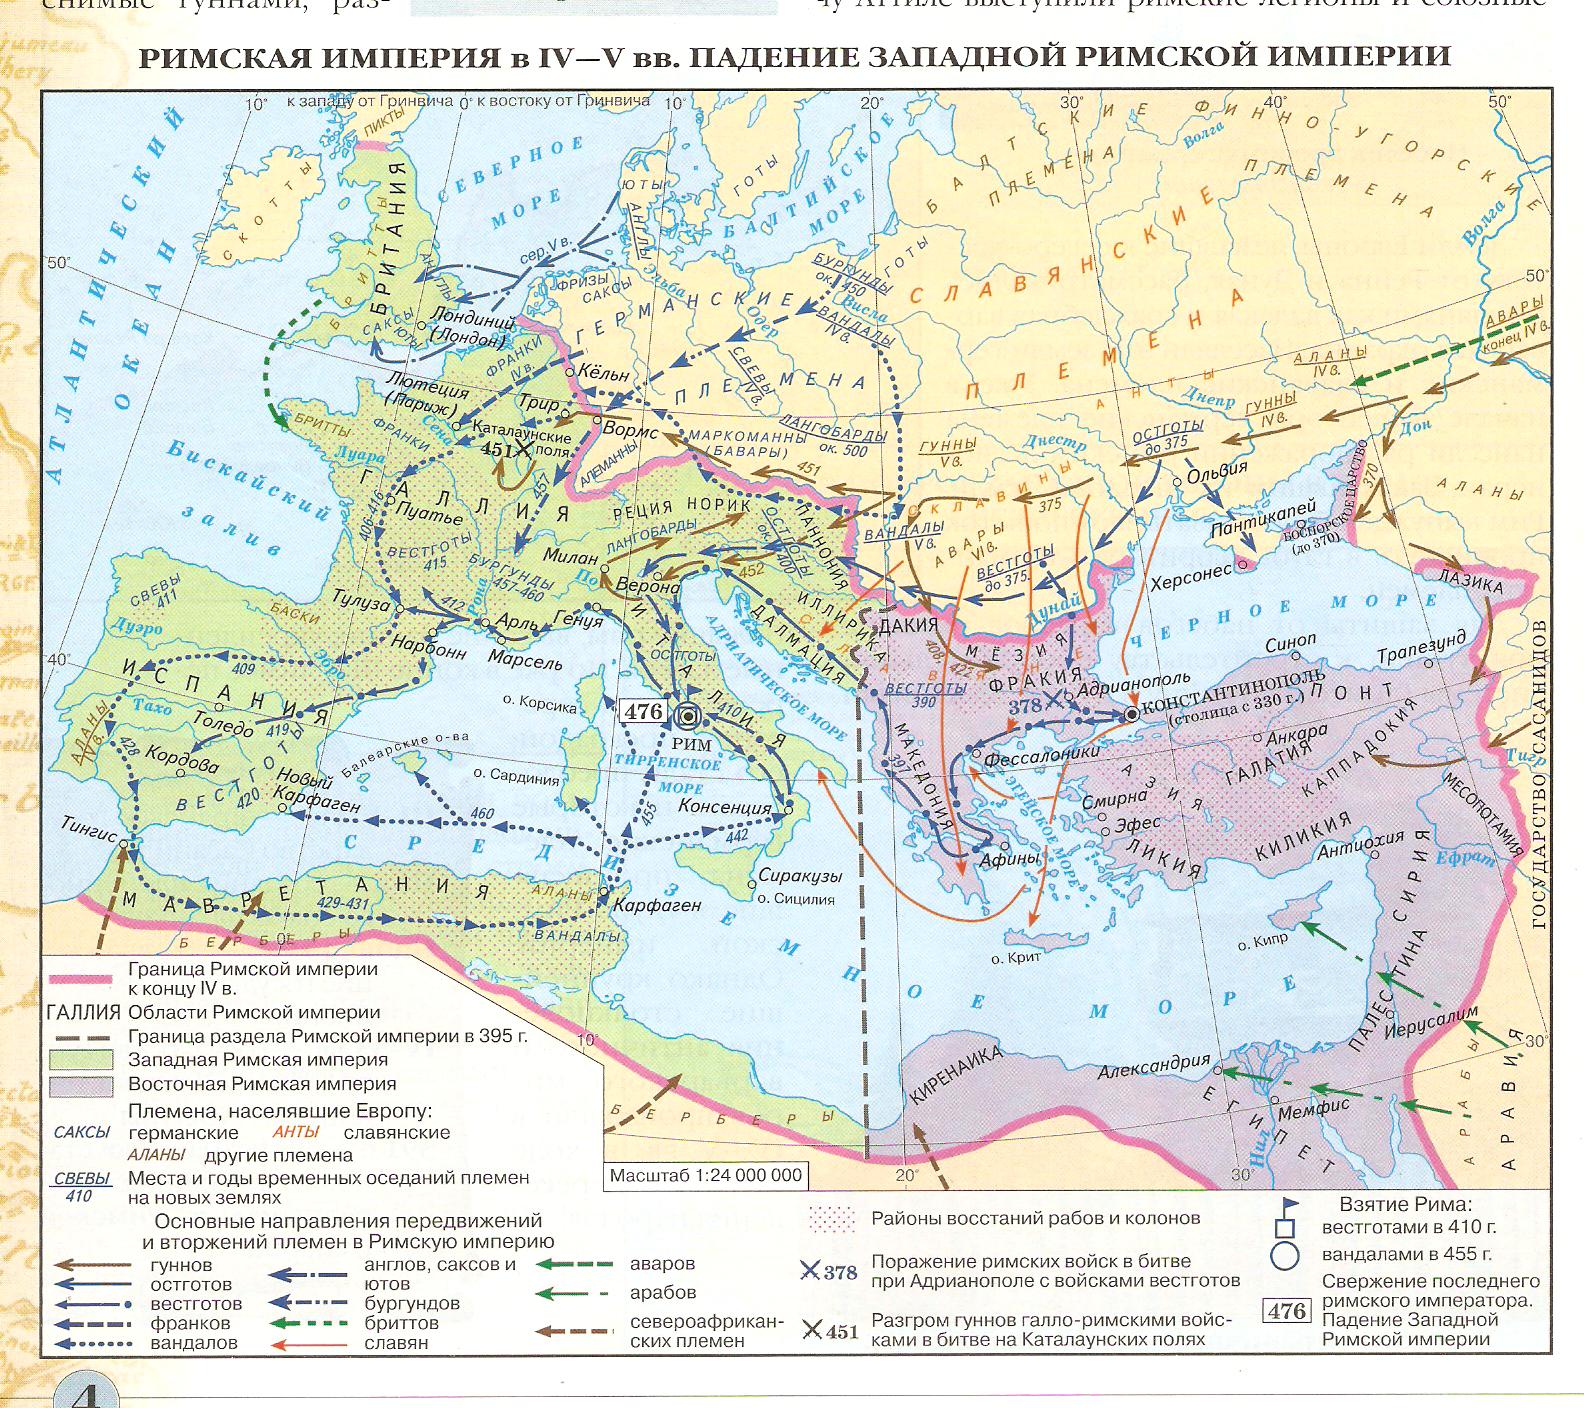 Контурная карта по истории 6 класс отечественная история с древнейших времен до конца xvlll века